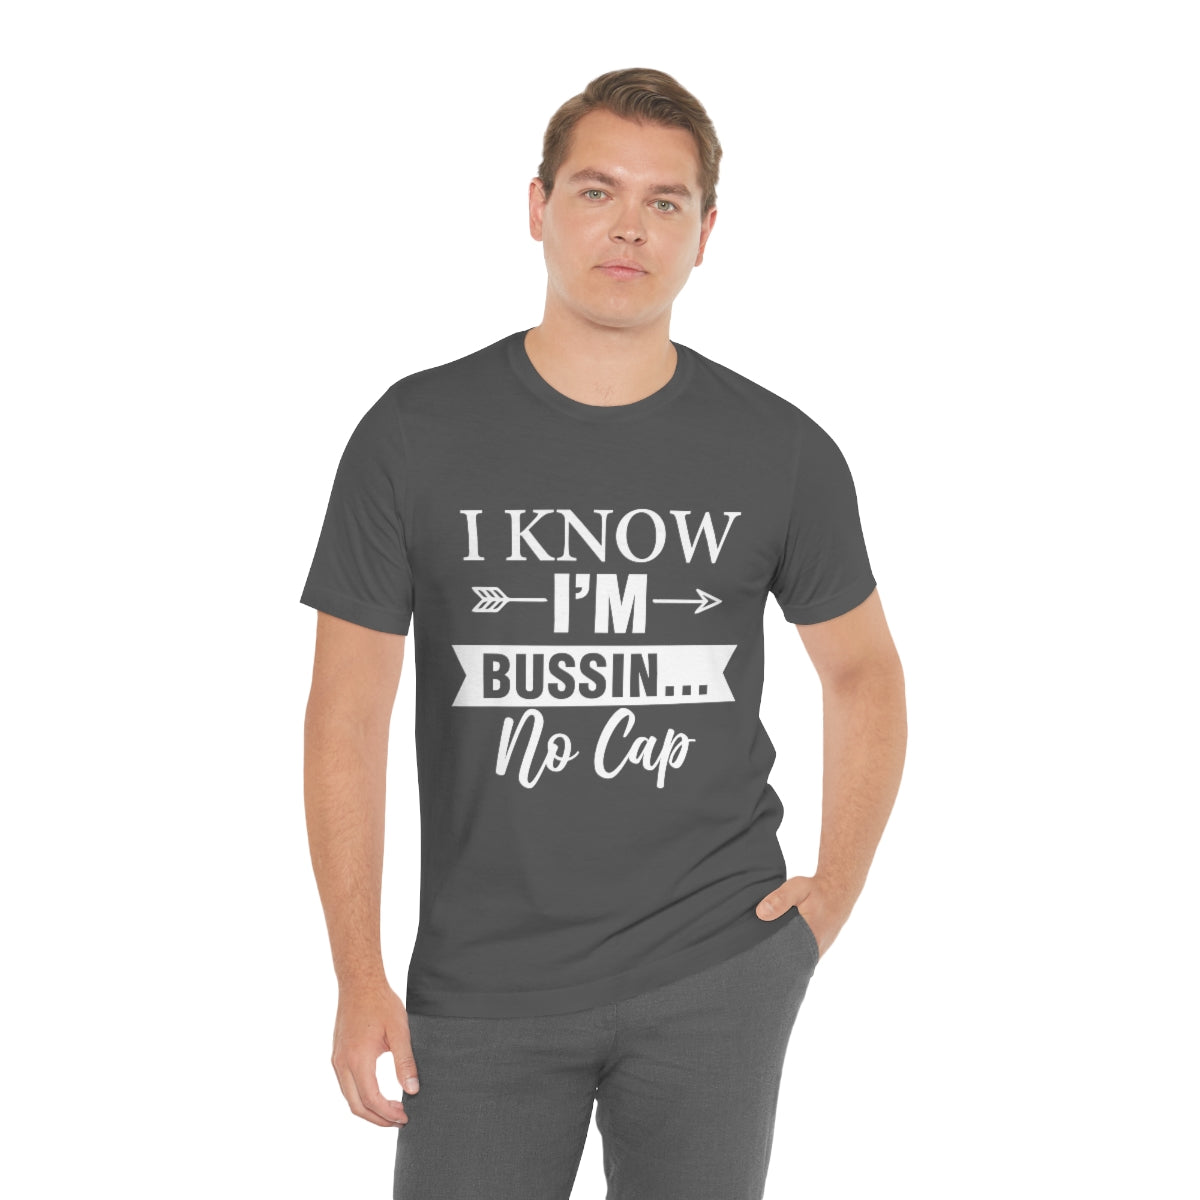 Affirmation Feminist Pro Choice T-Shirt Unisex Size - I Know I am Printify